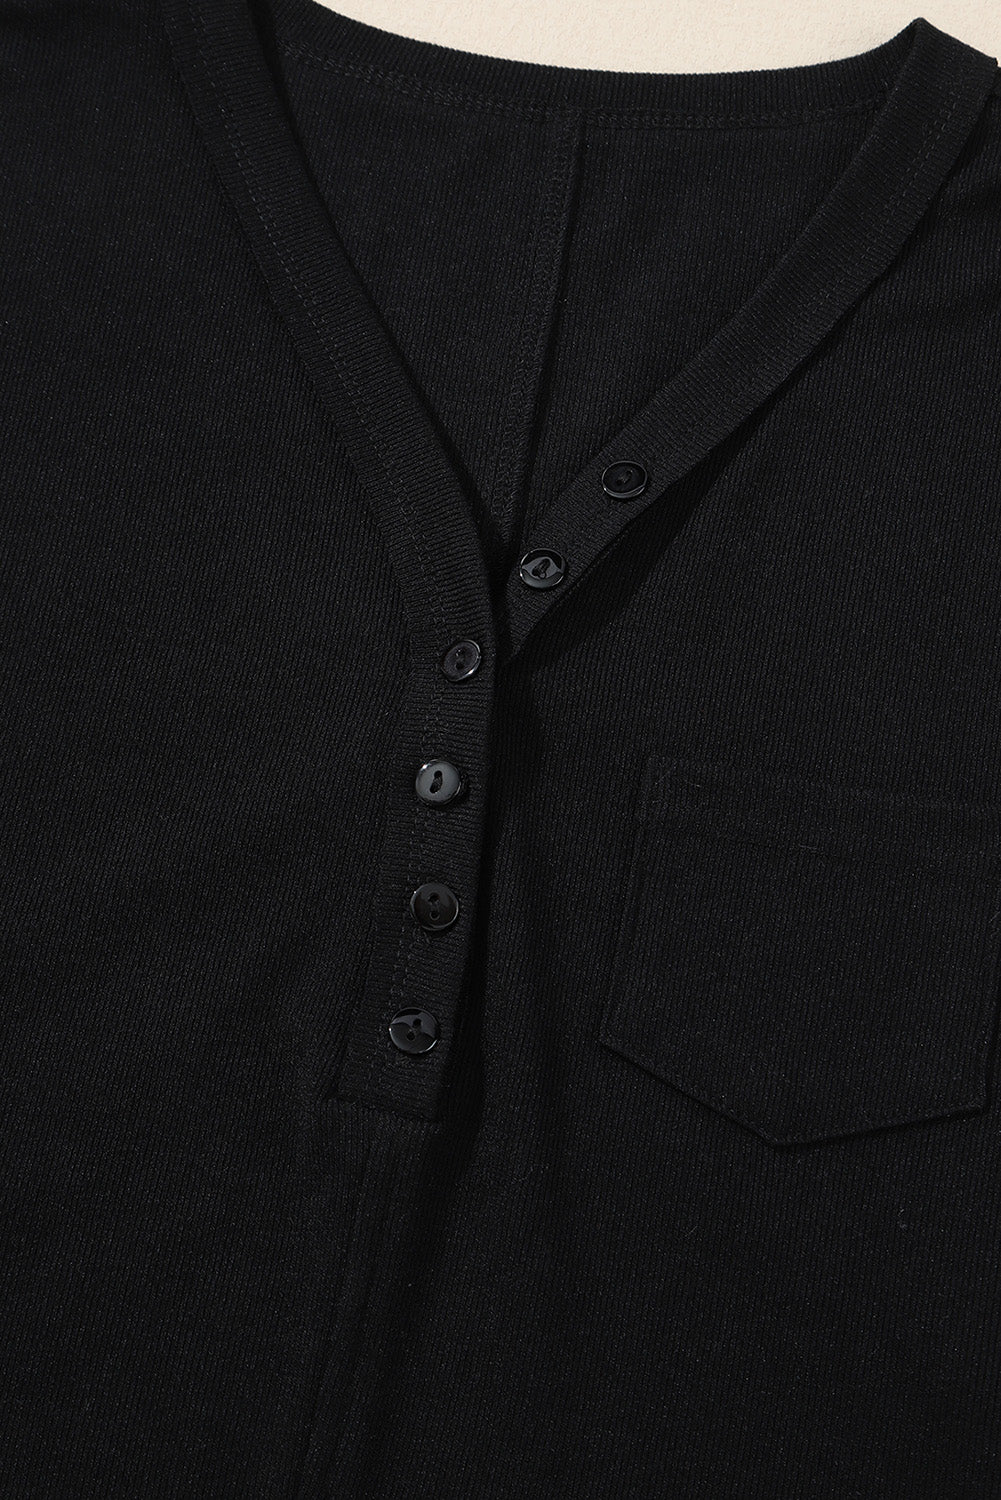 Črna rebrasta majica z žepom in gumbi z razcepljenim ovratnikom